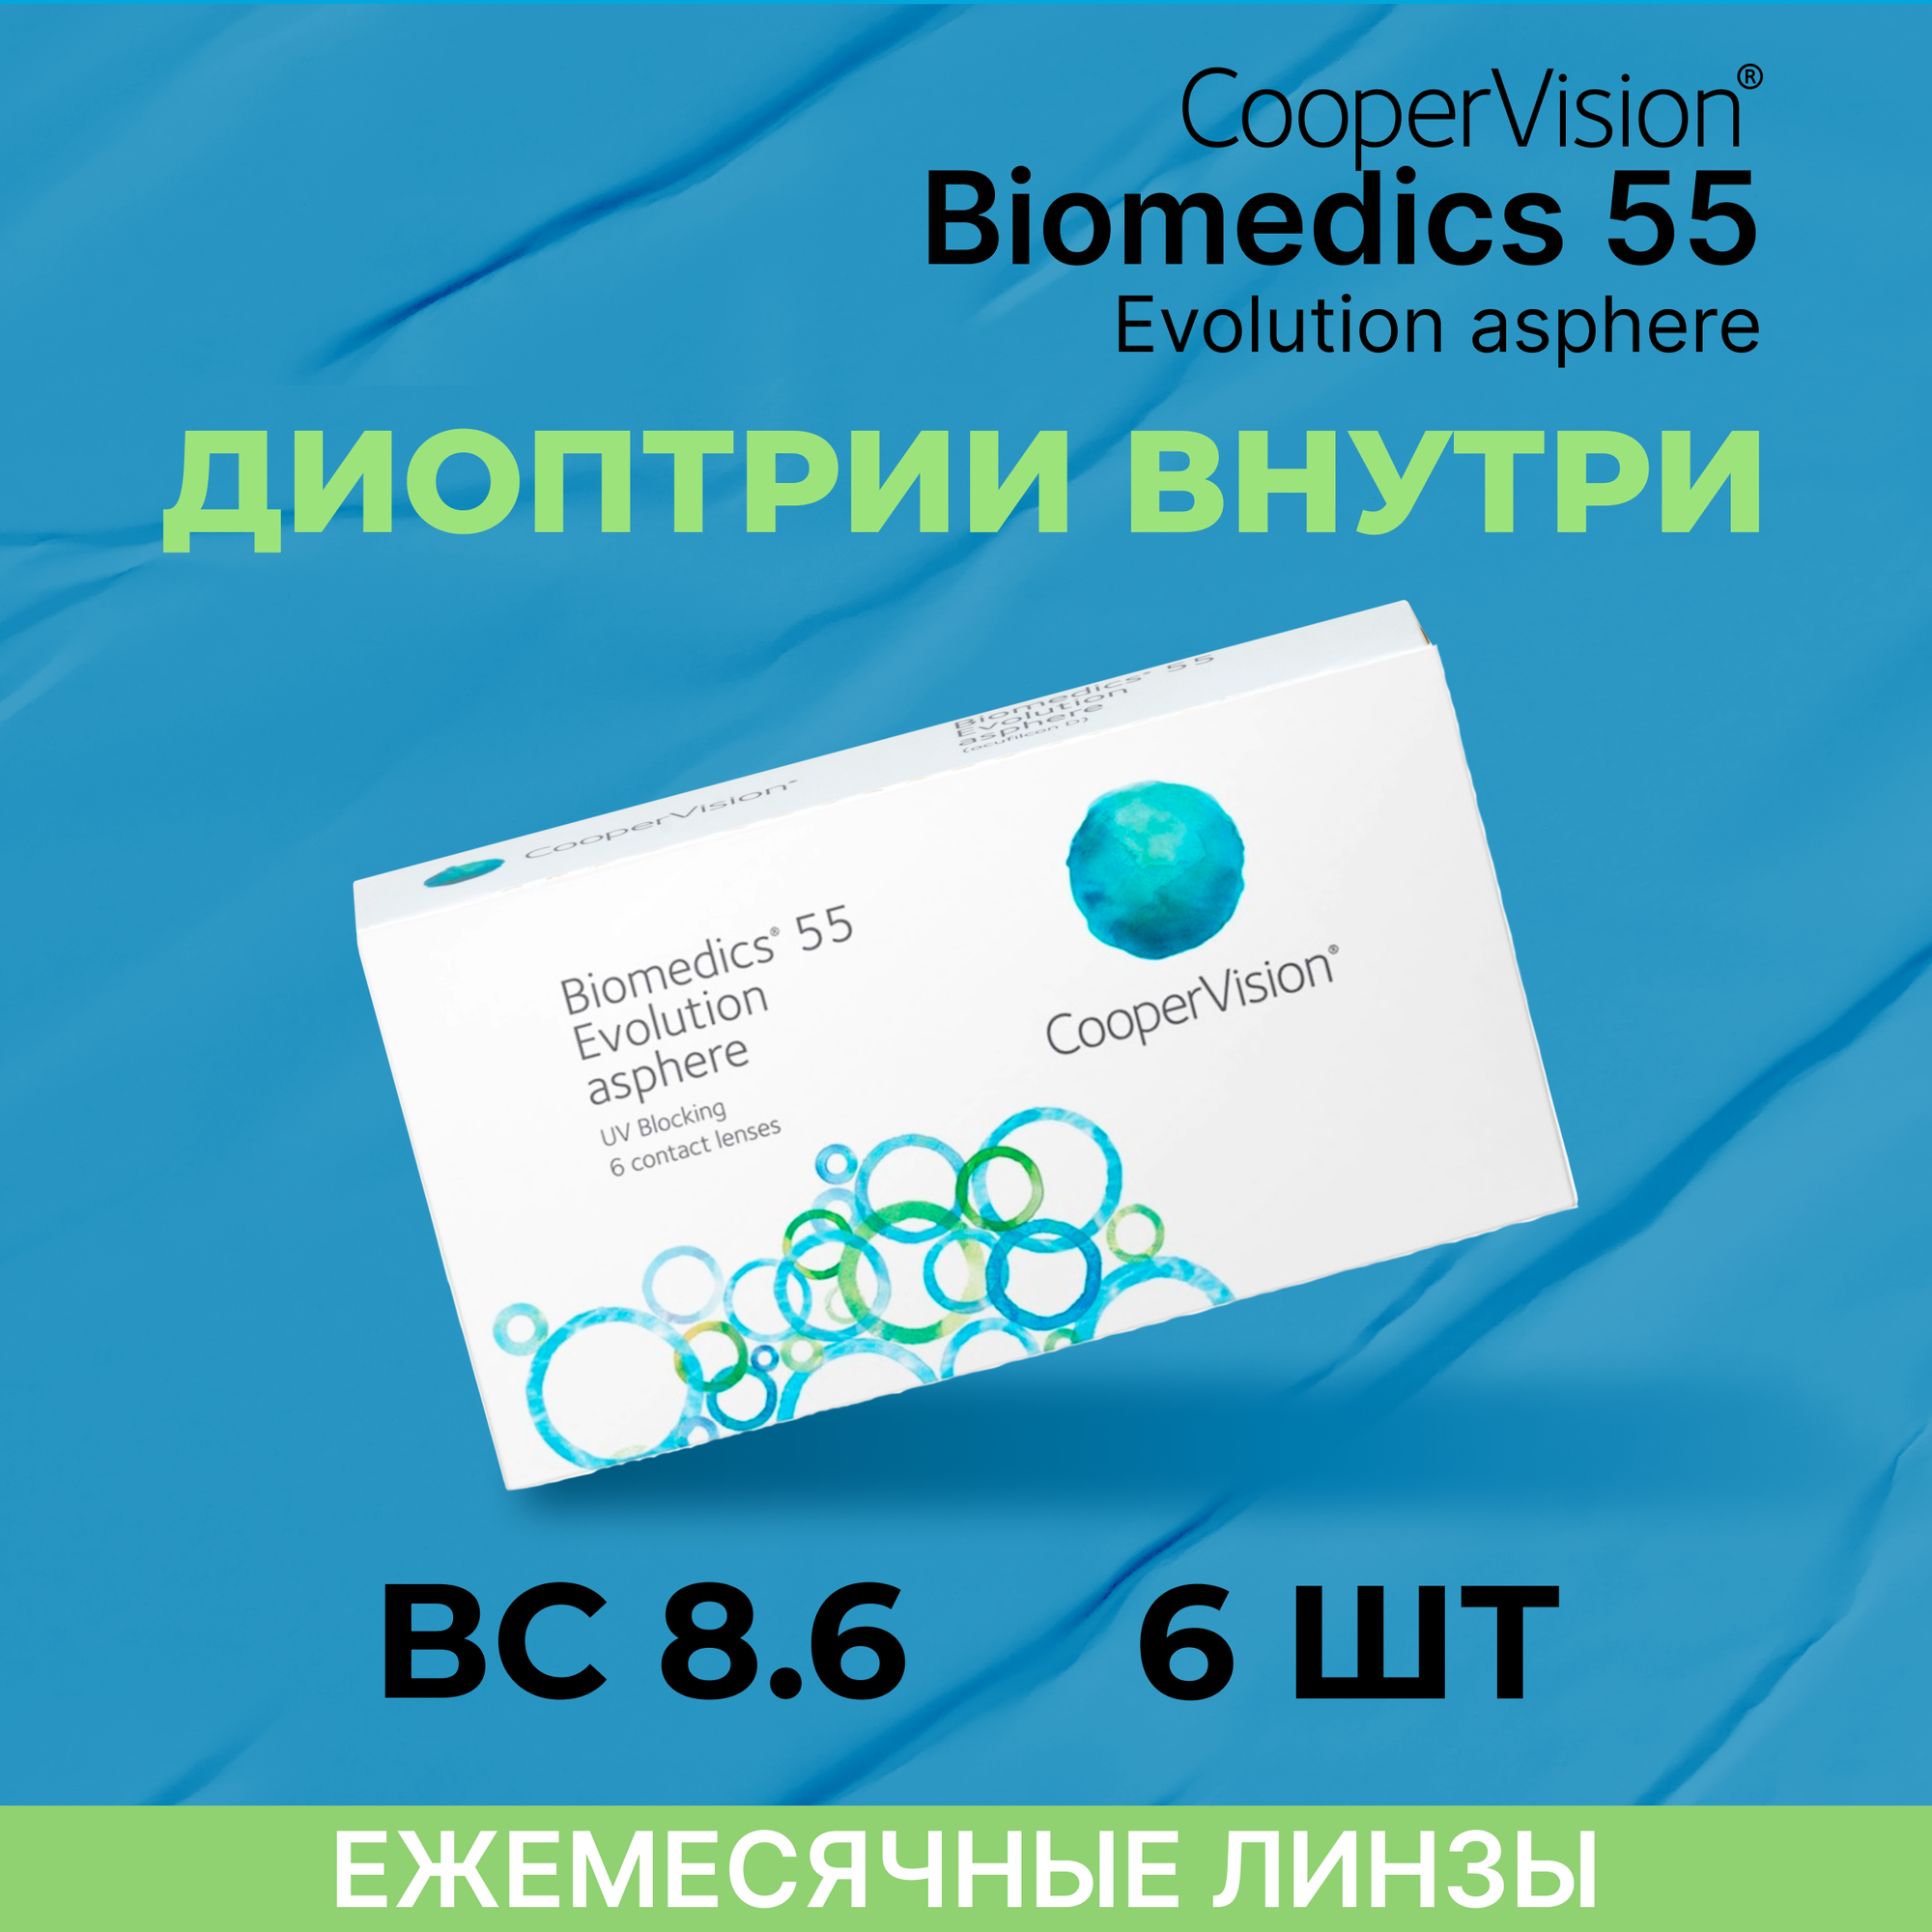 Контактные линзы CooperVision Biomedics 55 Evolution Asphere (6 линз) -3.50 R 8.9, ежемесячные, прозрачные